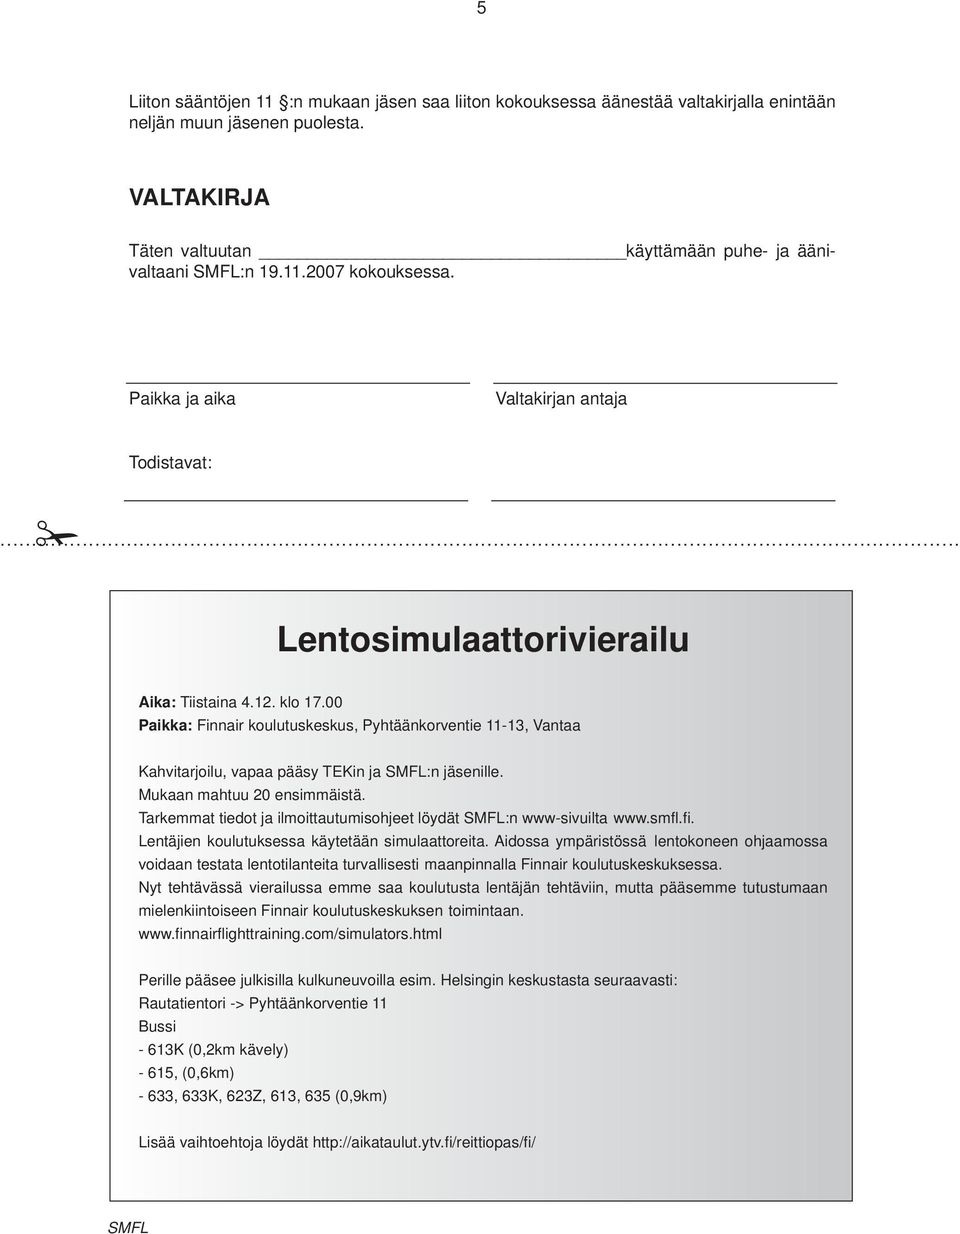 00 Paikka: Finnair koulutuskeskus, Pyhtäänkorventie 11-13, Vantaa Kahvitarjoilu, vapaa pääsy TEKin ja SMFL:n jäsenille. Mukaan mahtuu 20 ensimmäistä.